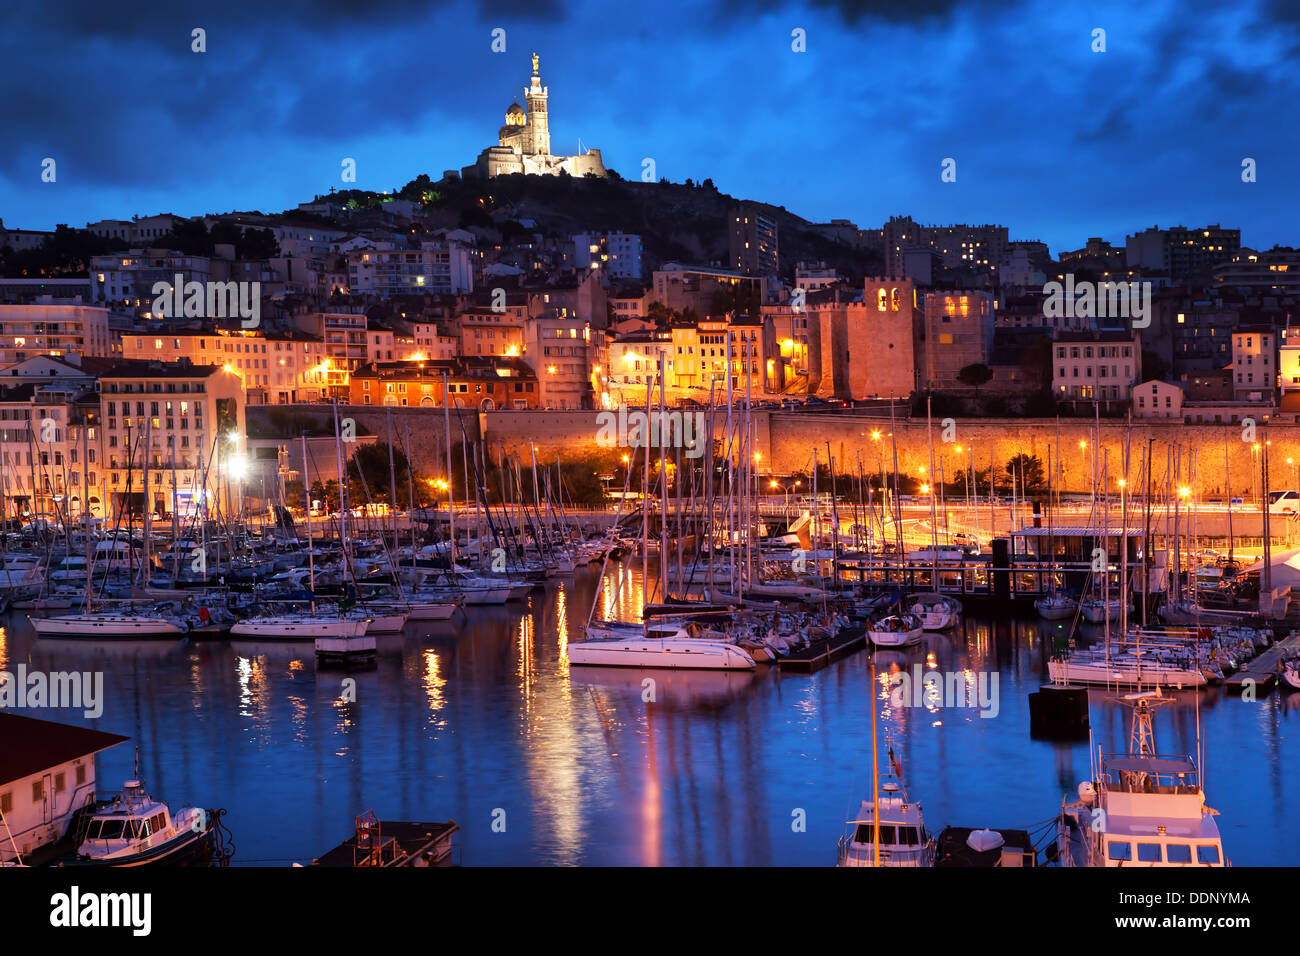 Marsiglia, Porto Vecchio porto / Vieux Port, Francia durante la notte con vista sulla cattedrale di Notre Dame de la Garde sulla collina di notte Foto Stock